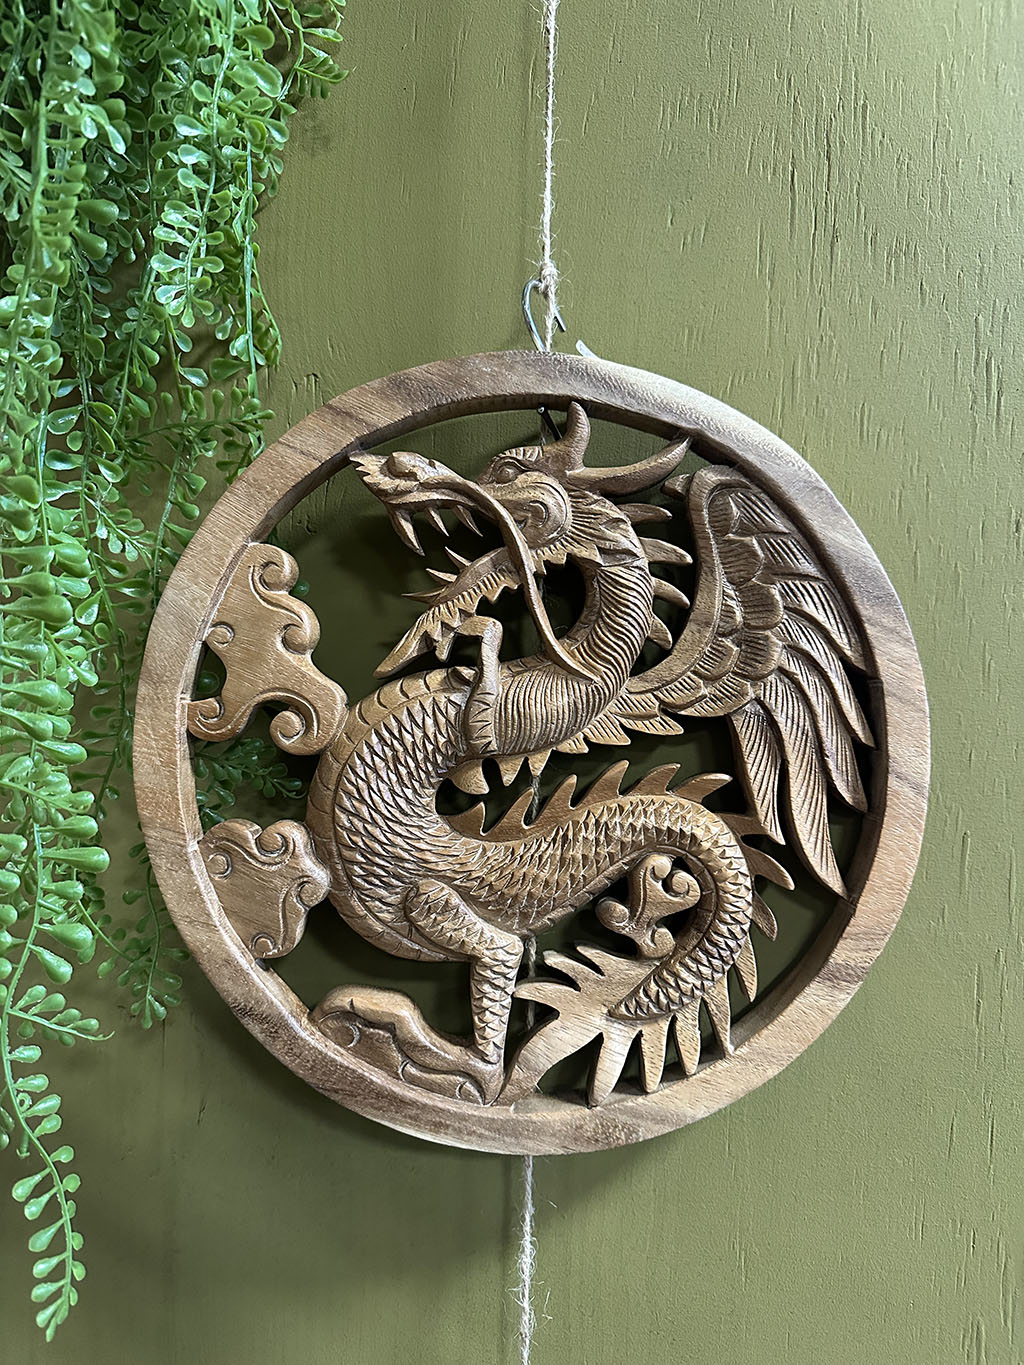 Deze tot in detail uitgesneden ronde houten wandecoratie met een draak in het midden is een pronkstuk aan uw muur. Prachtig uit één stuk hout gesneden!